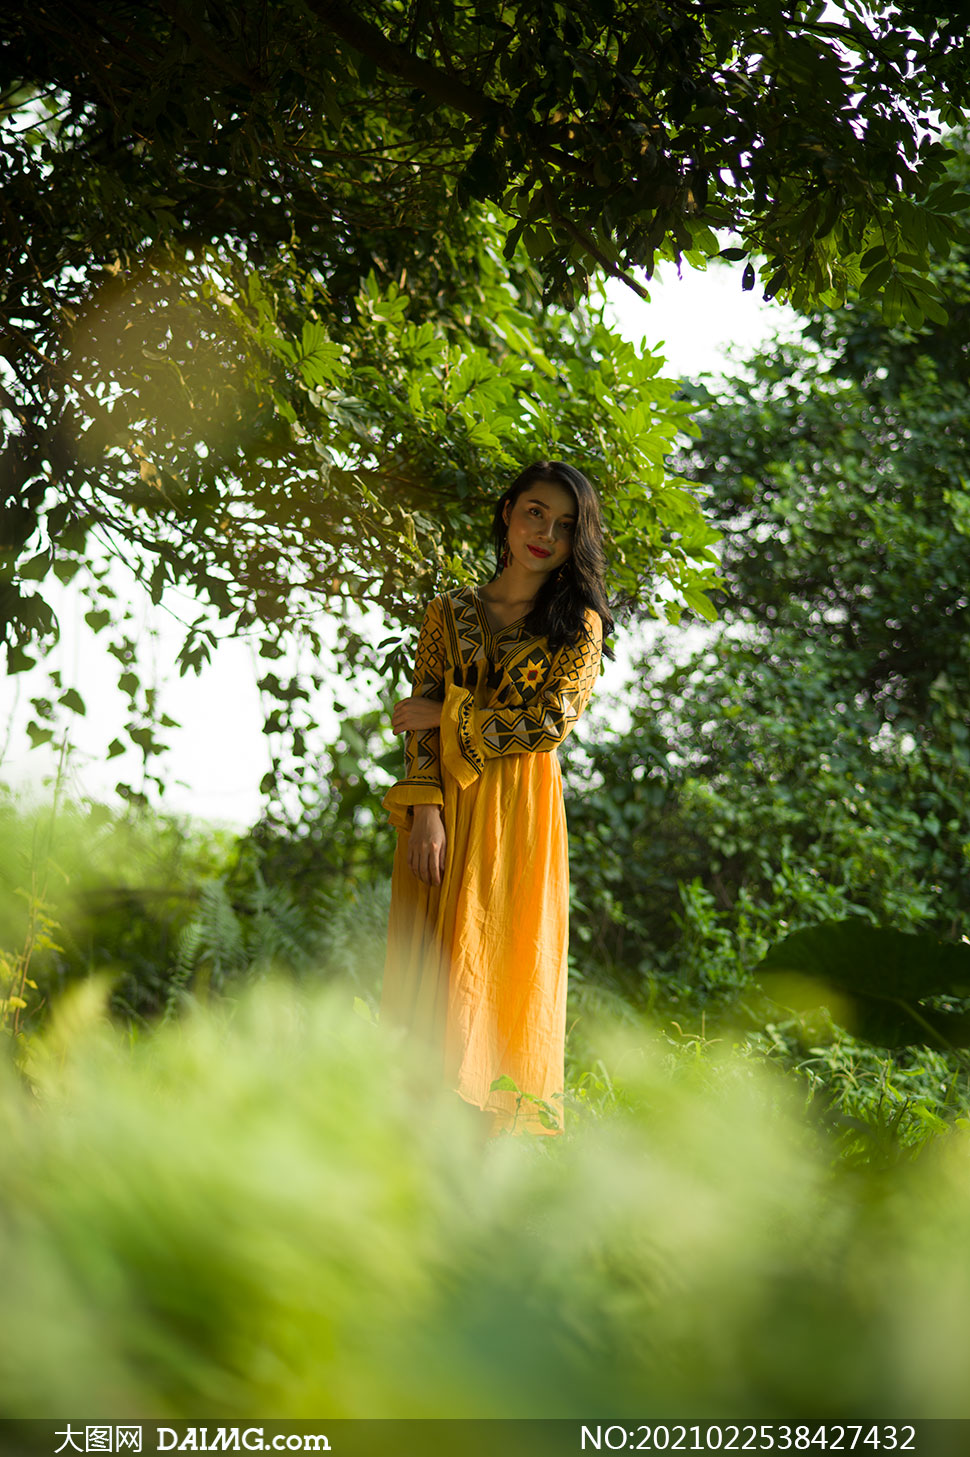 站在树下的黄裙子美女摄影原片素材